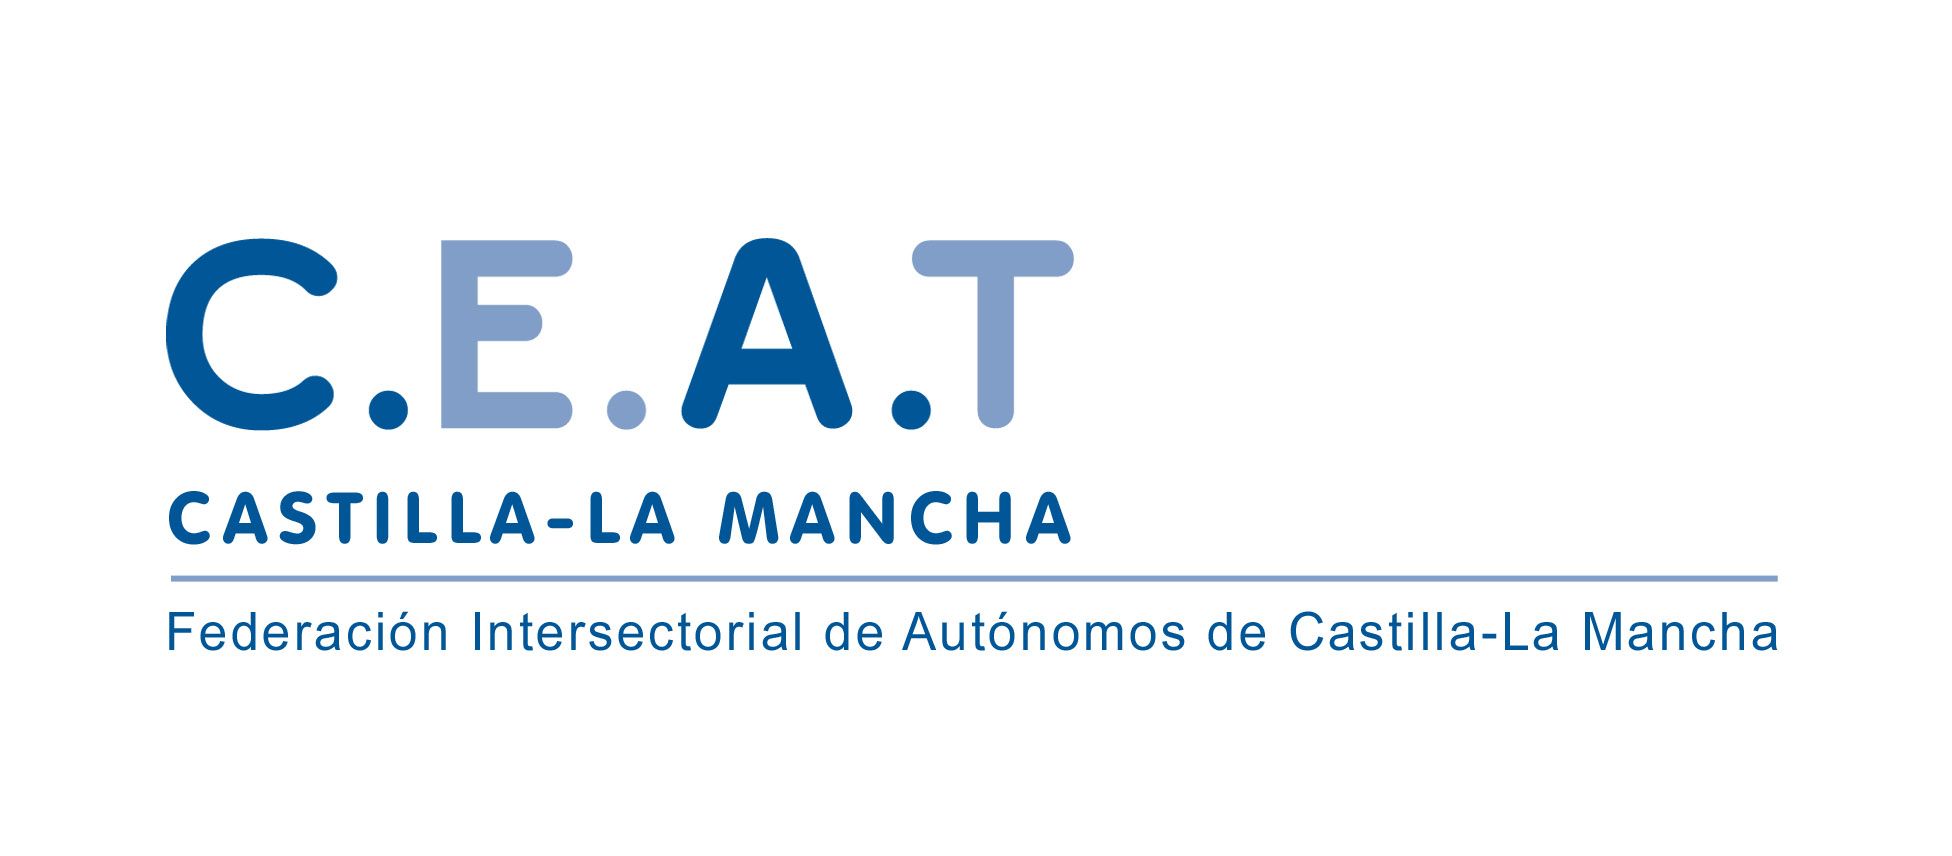 CEAT Castilla-La Mancha pide que se prorrogue la prestación por cese de actividad para los autónomos